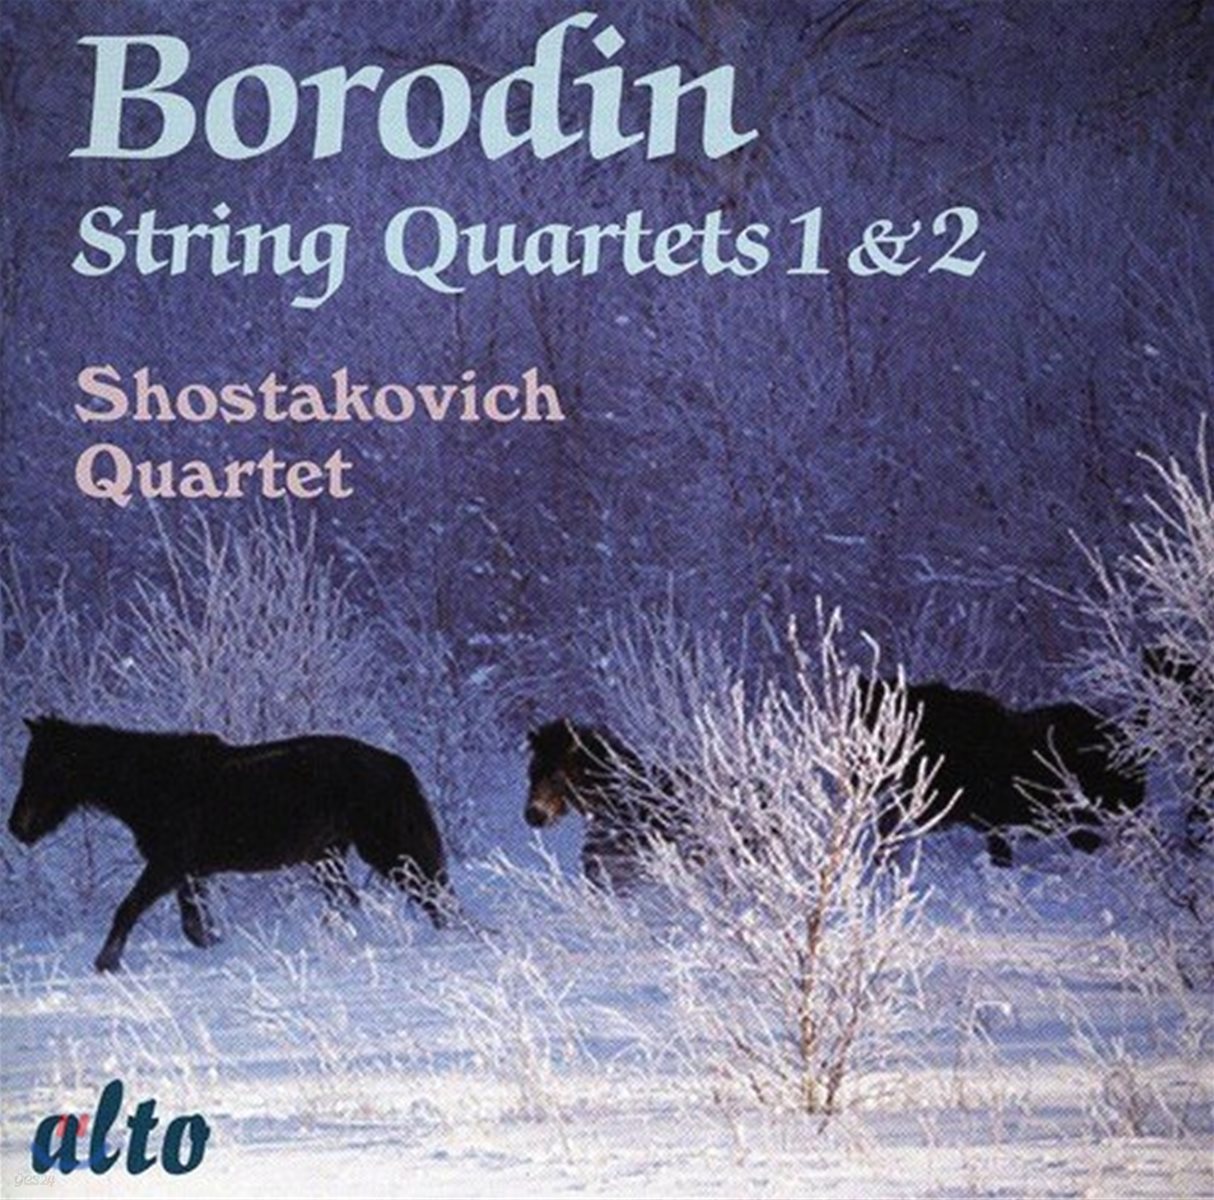 The Shostakovich Quartet 보로딘: 현악 사중주 1 & 2번 (Borodin: String Quartets Nos. 1 & 2)